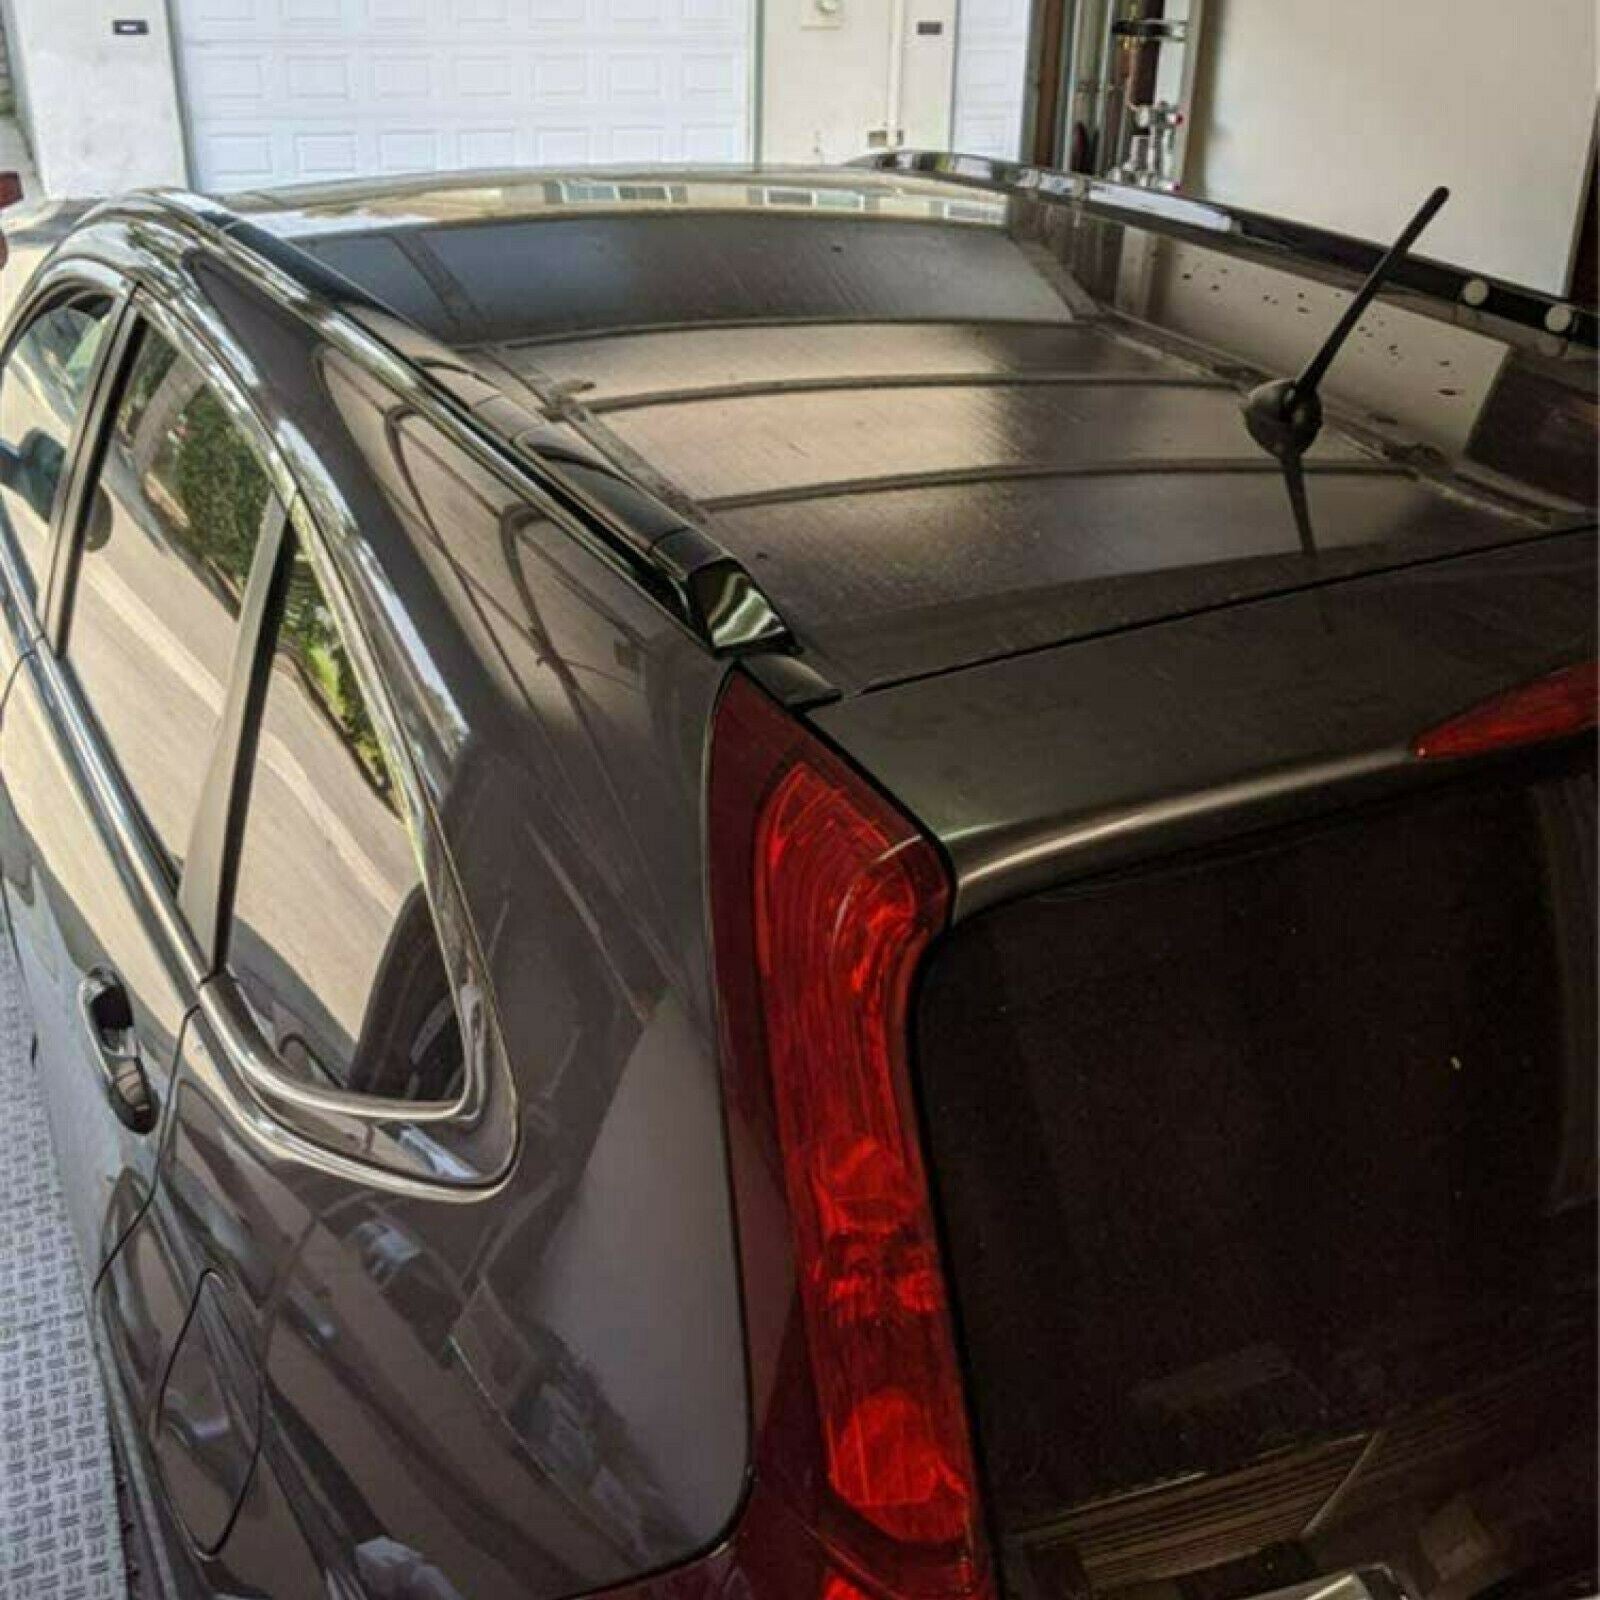 Ajuste 2012-2016 Honda CRV CR-V negro plateado portaequipajes barra de riel lateral juego de barras transversales